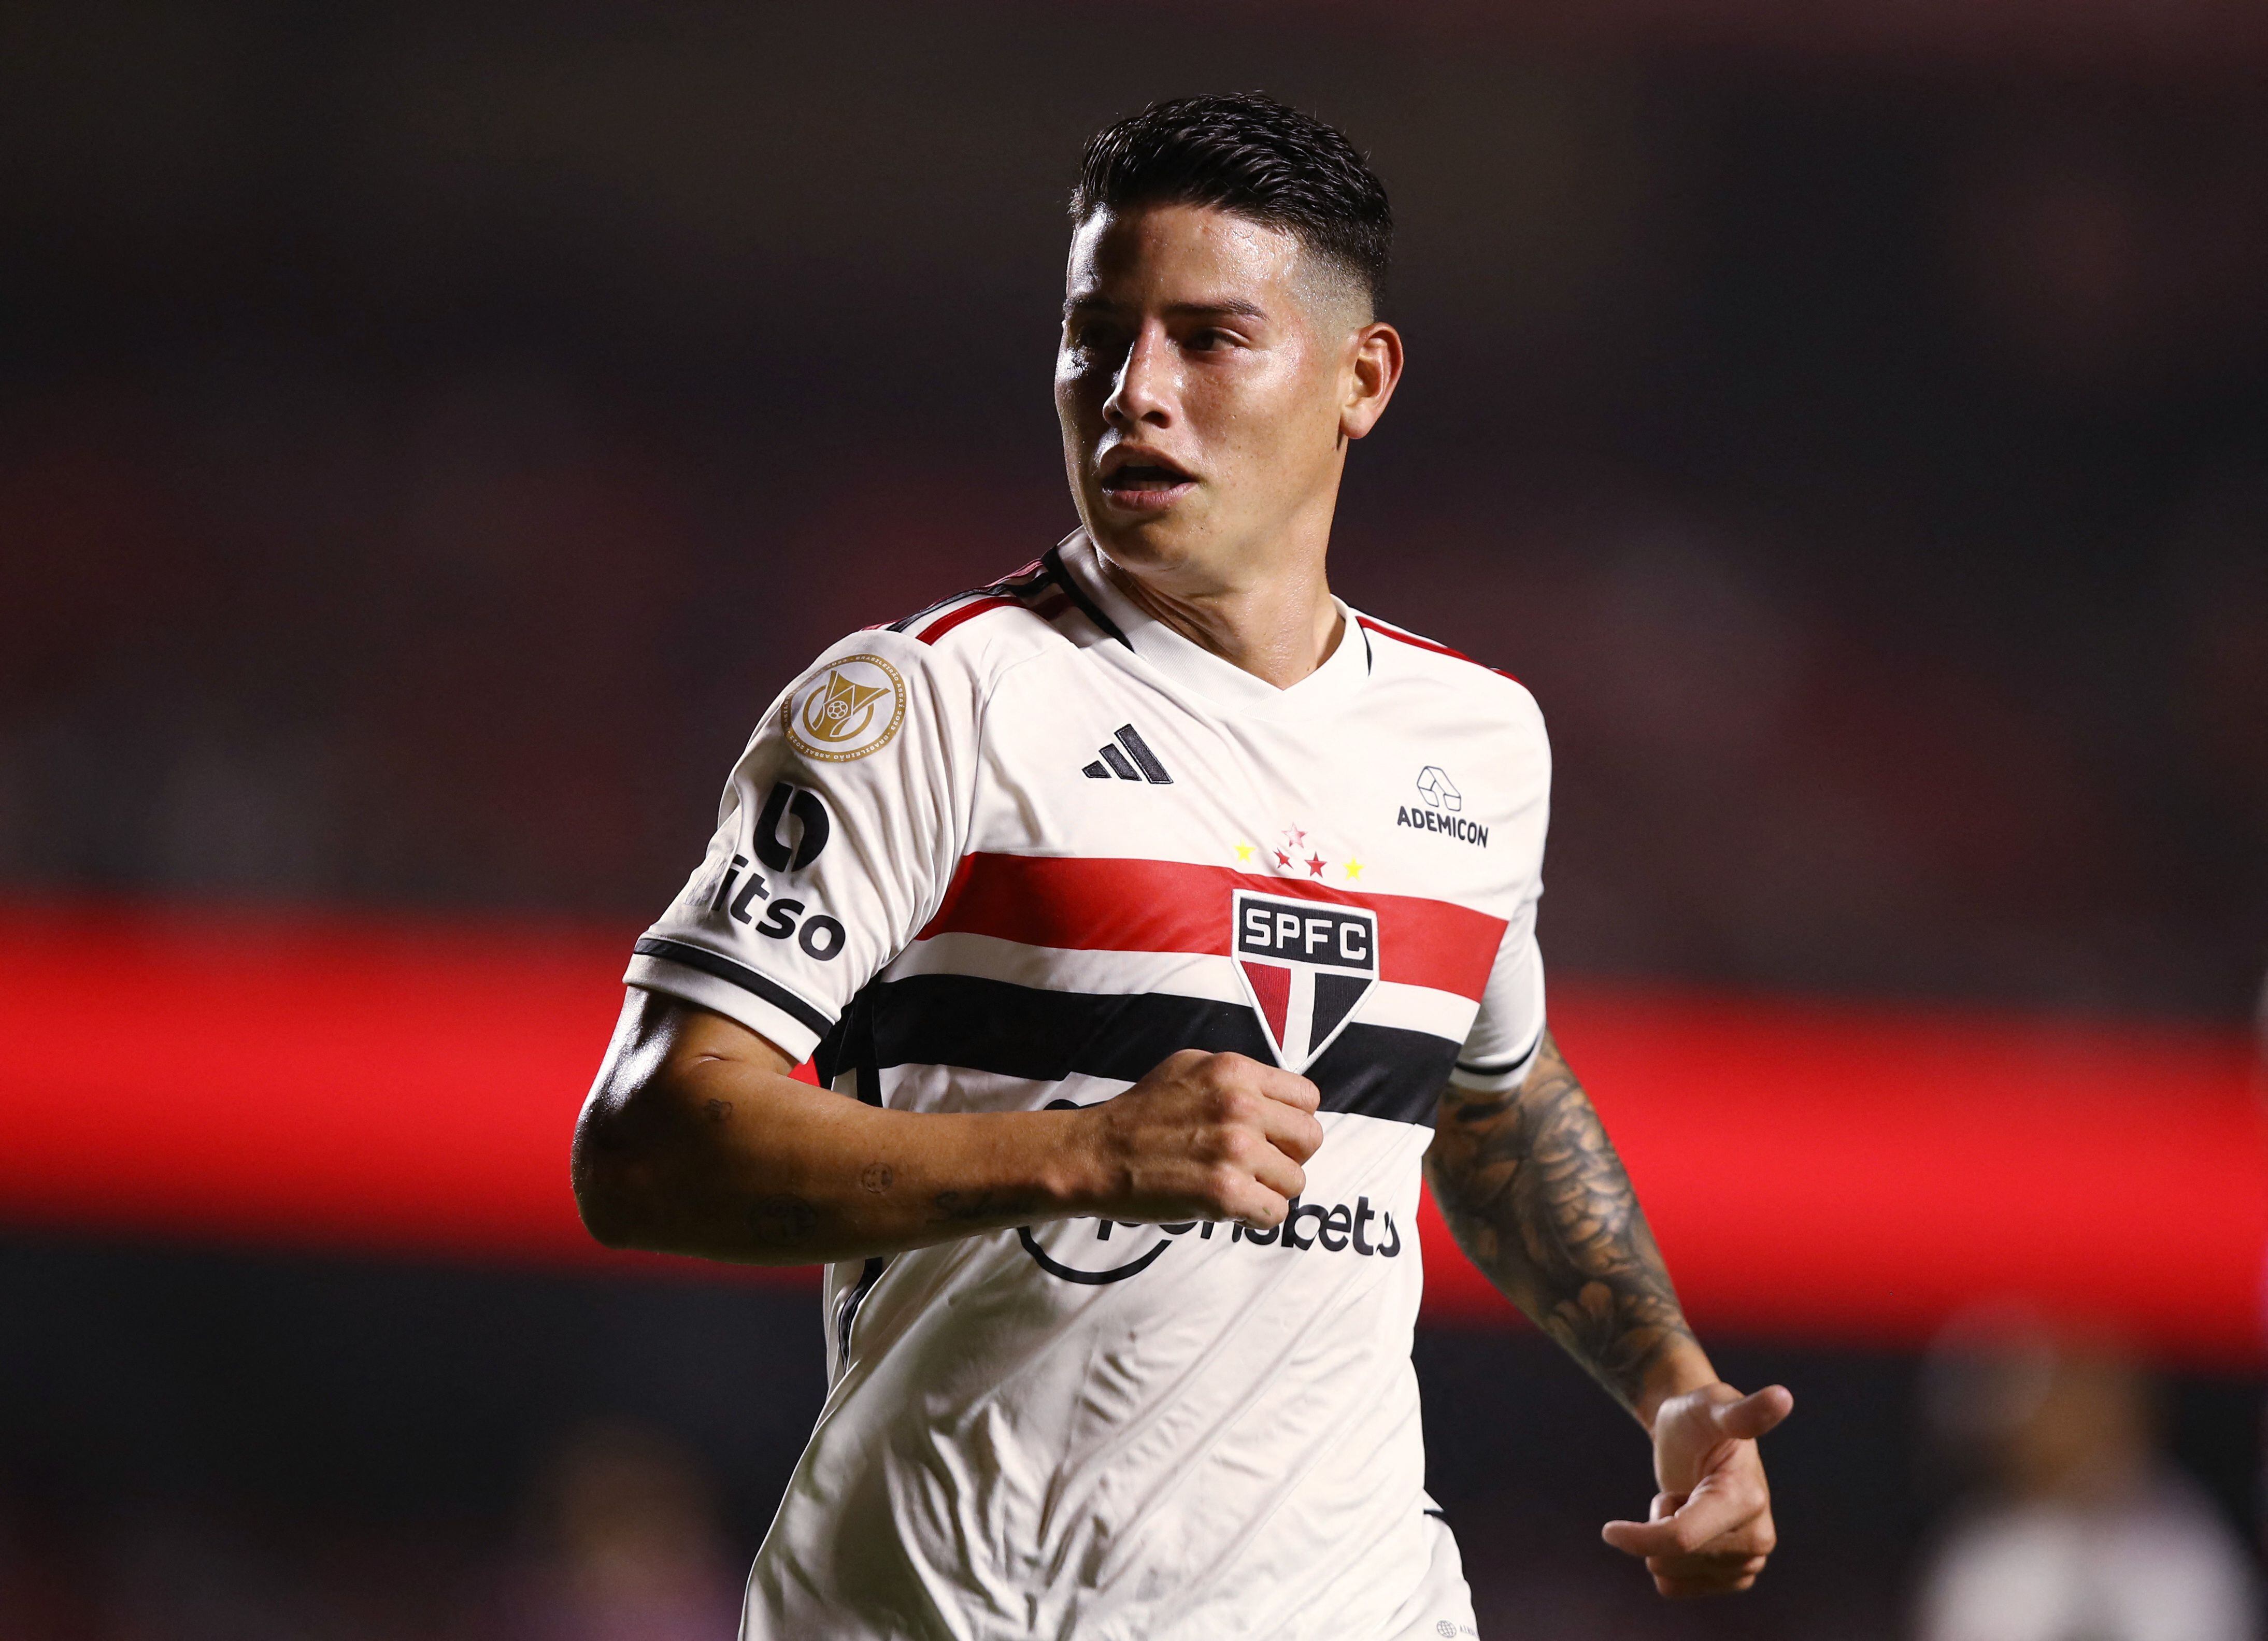 James Rodríguez apenas ha disputado seis partidos con la camiseta del São Paulo, donde ya registra un gol y una asistencia - crédito REUTERS/Carla Carniel